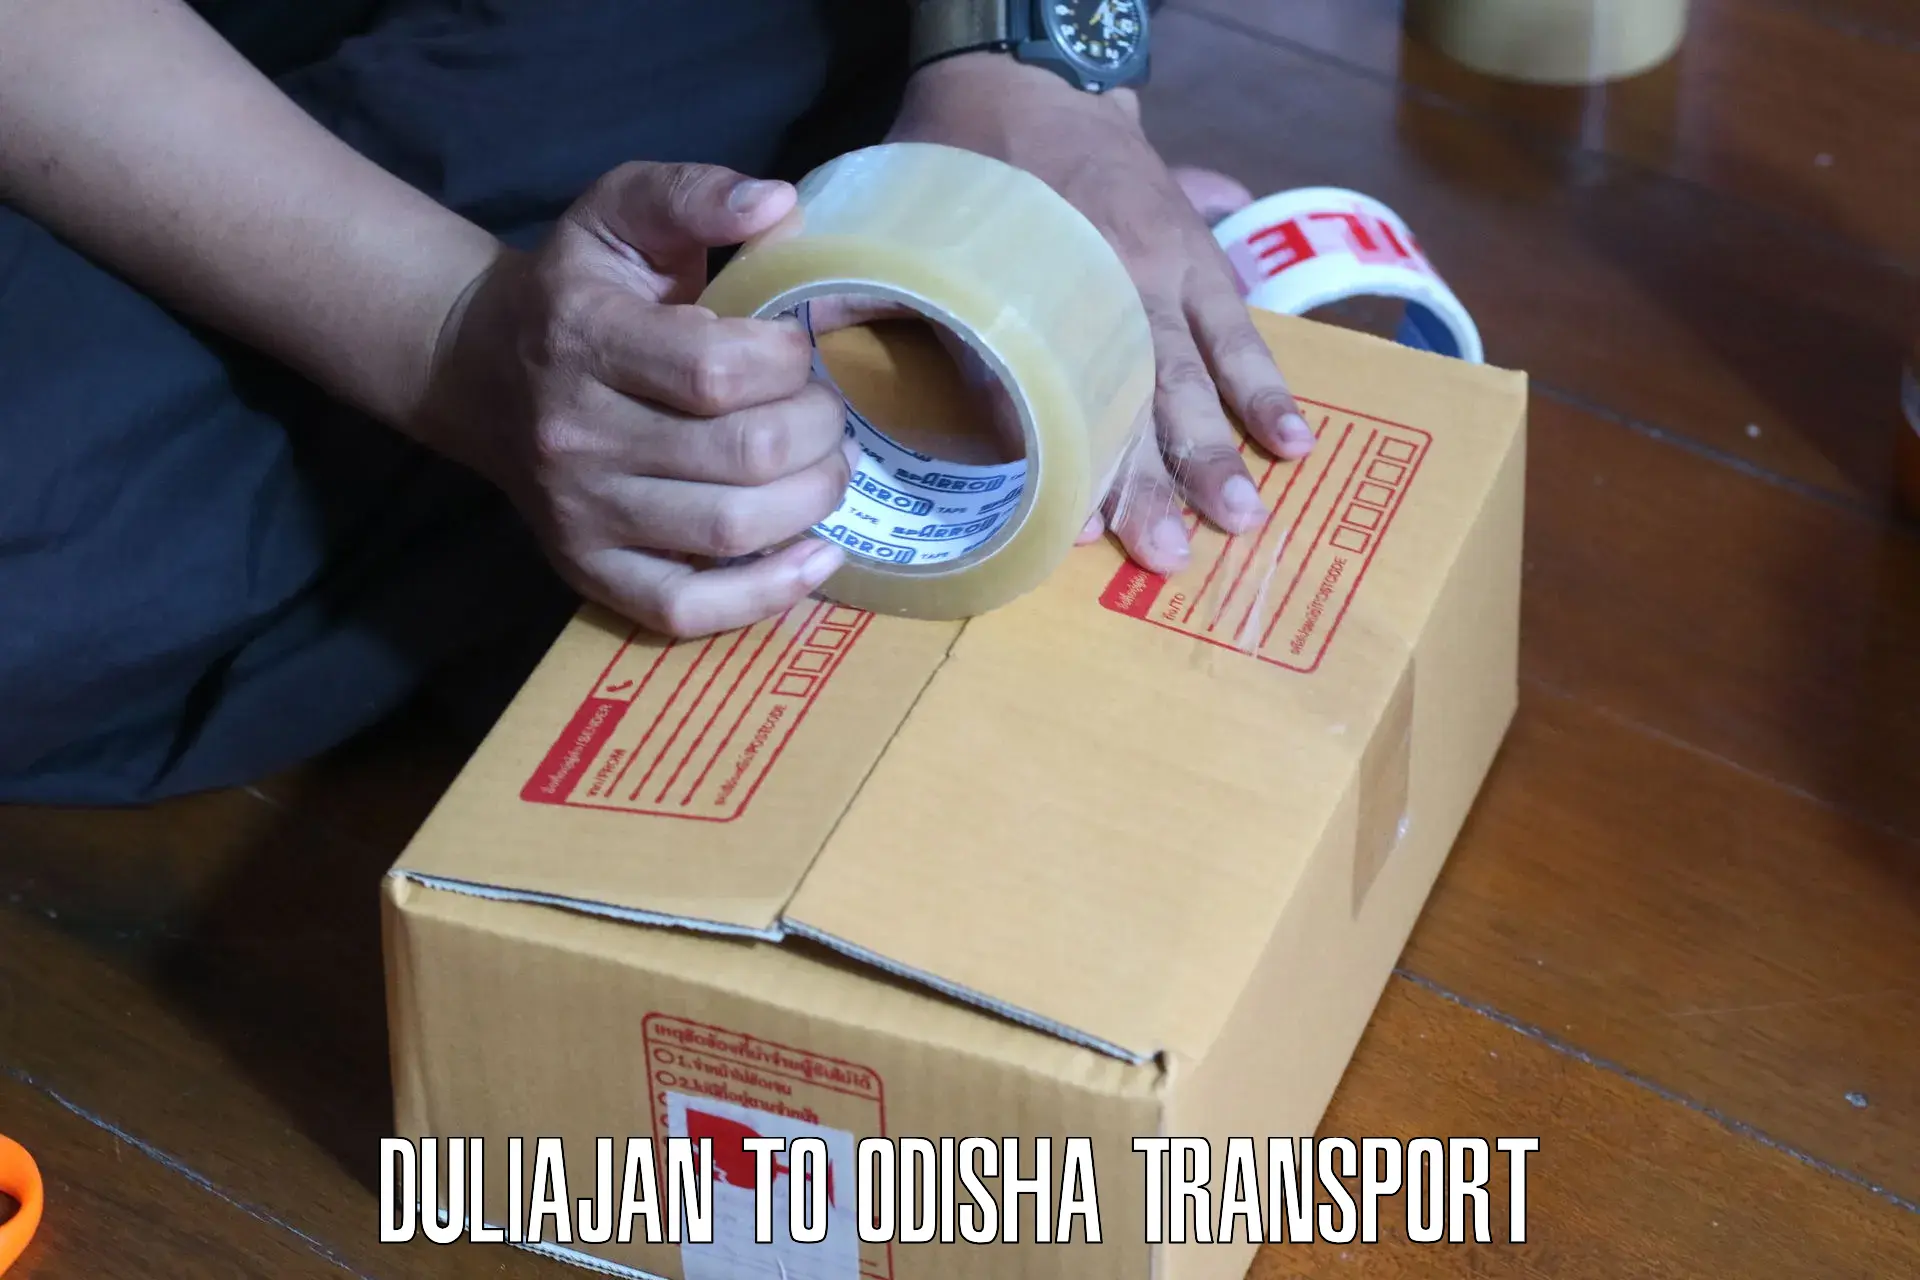 Daily transport service Duliajan to Bhubaneswar